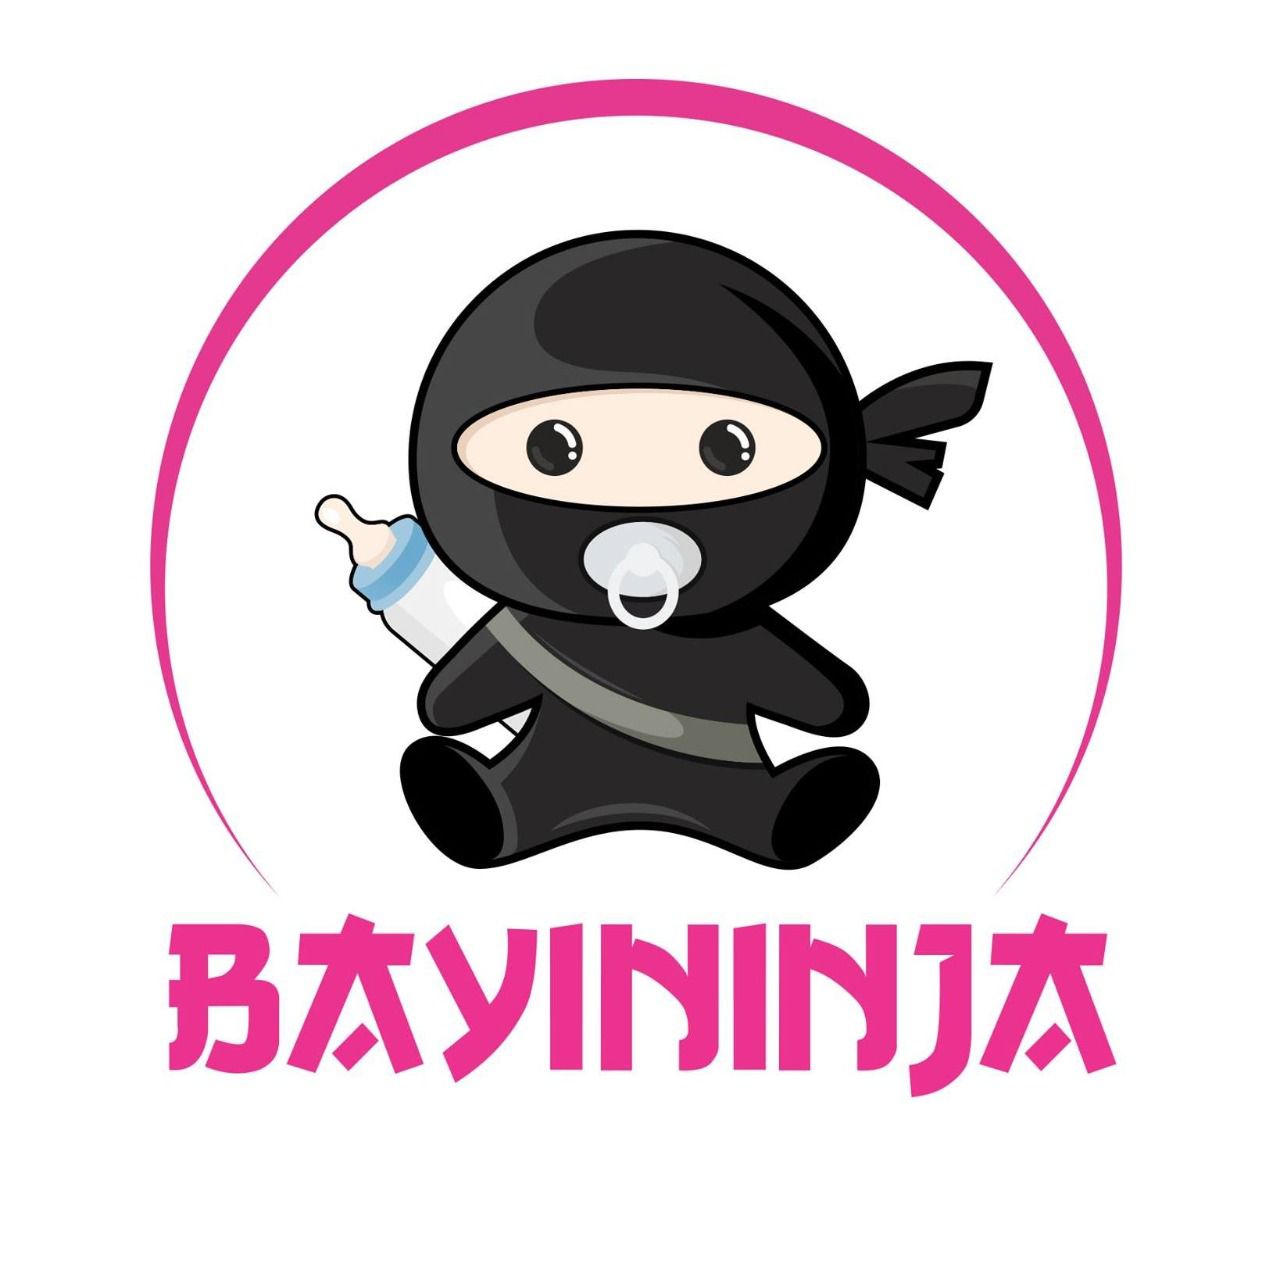 Bayi Ninja